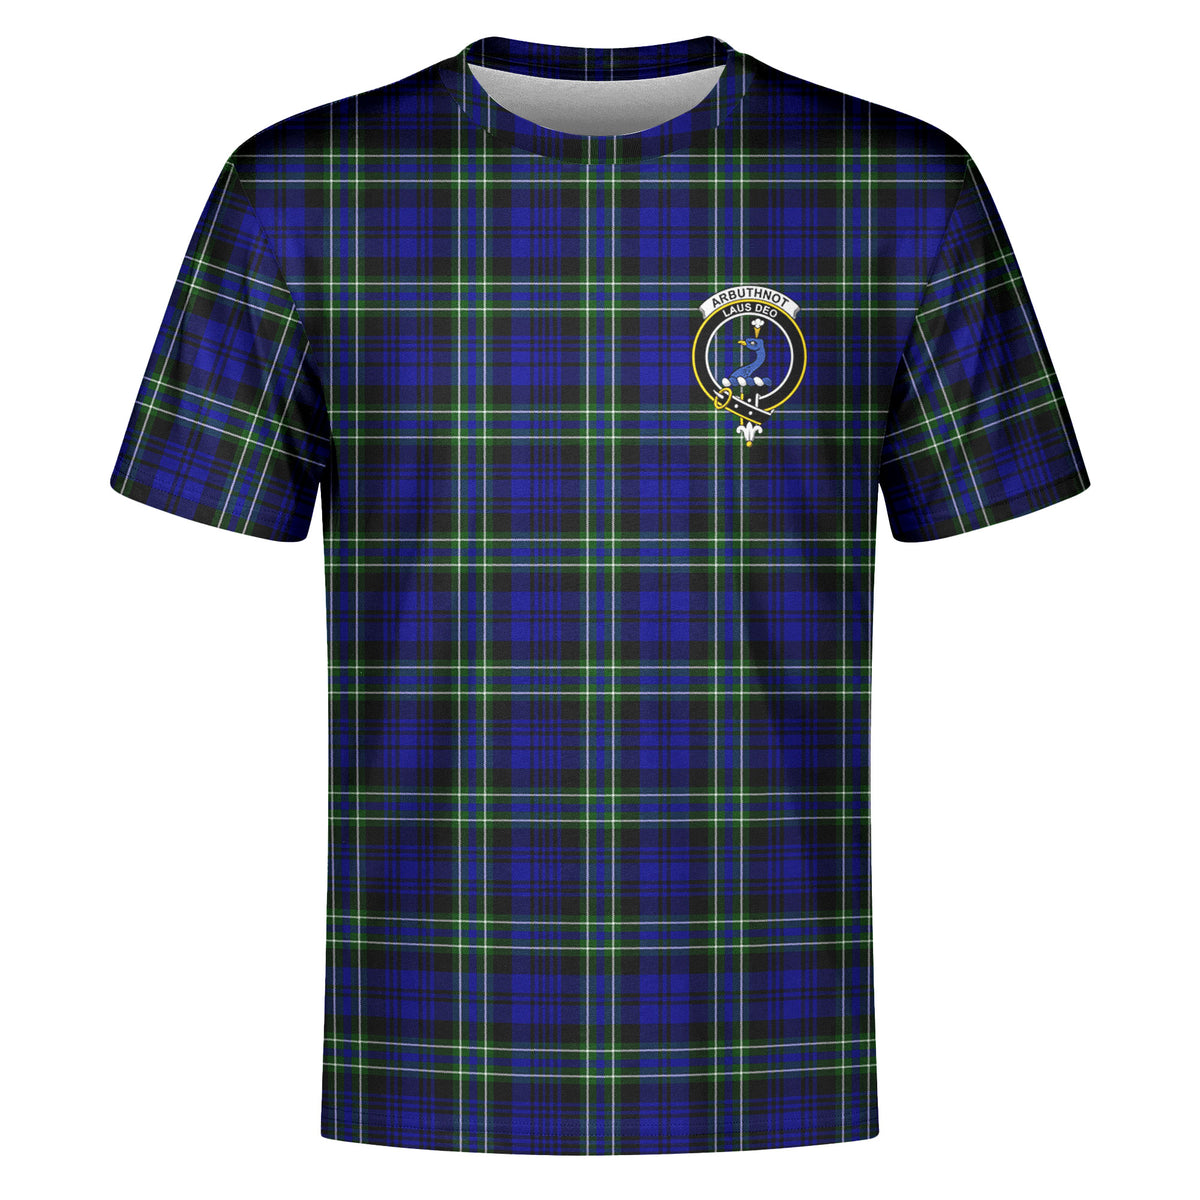 Arbuthnot Modern Tartan Crest T-shirt